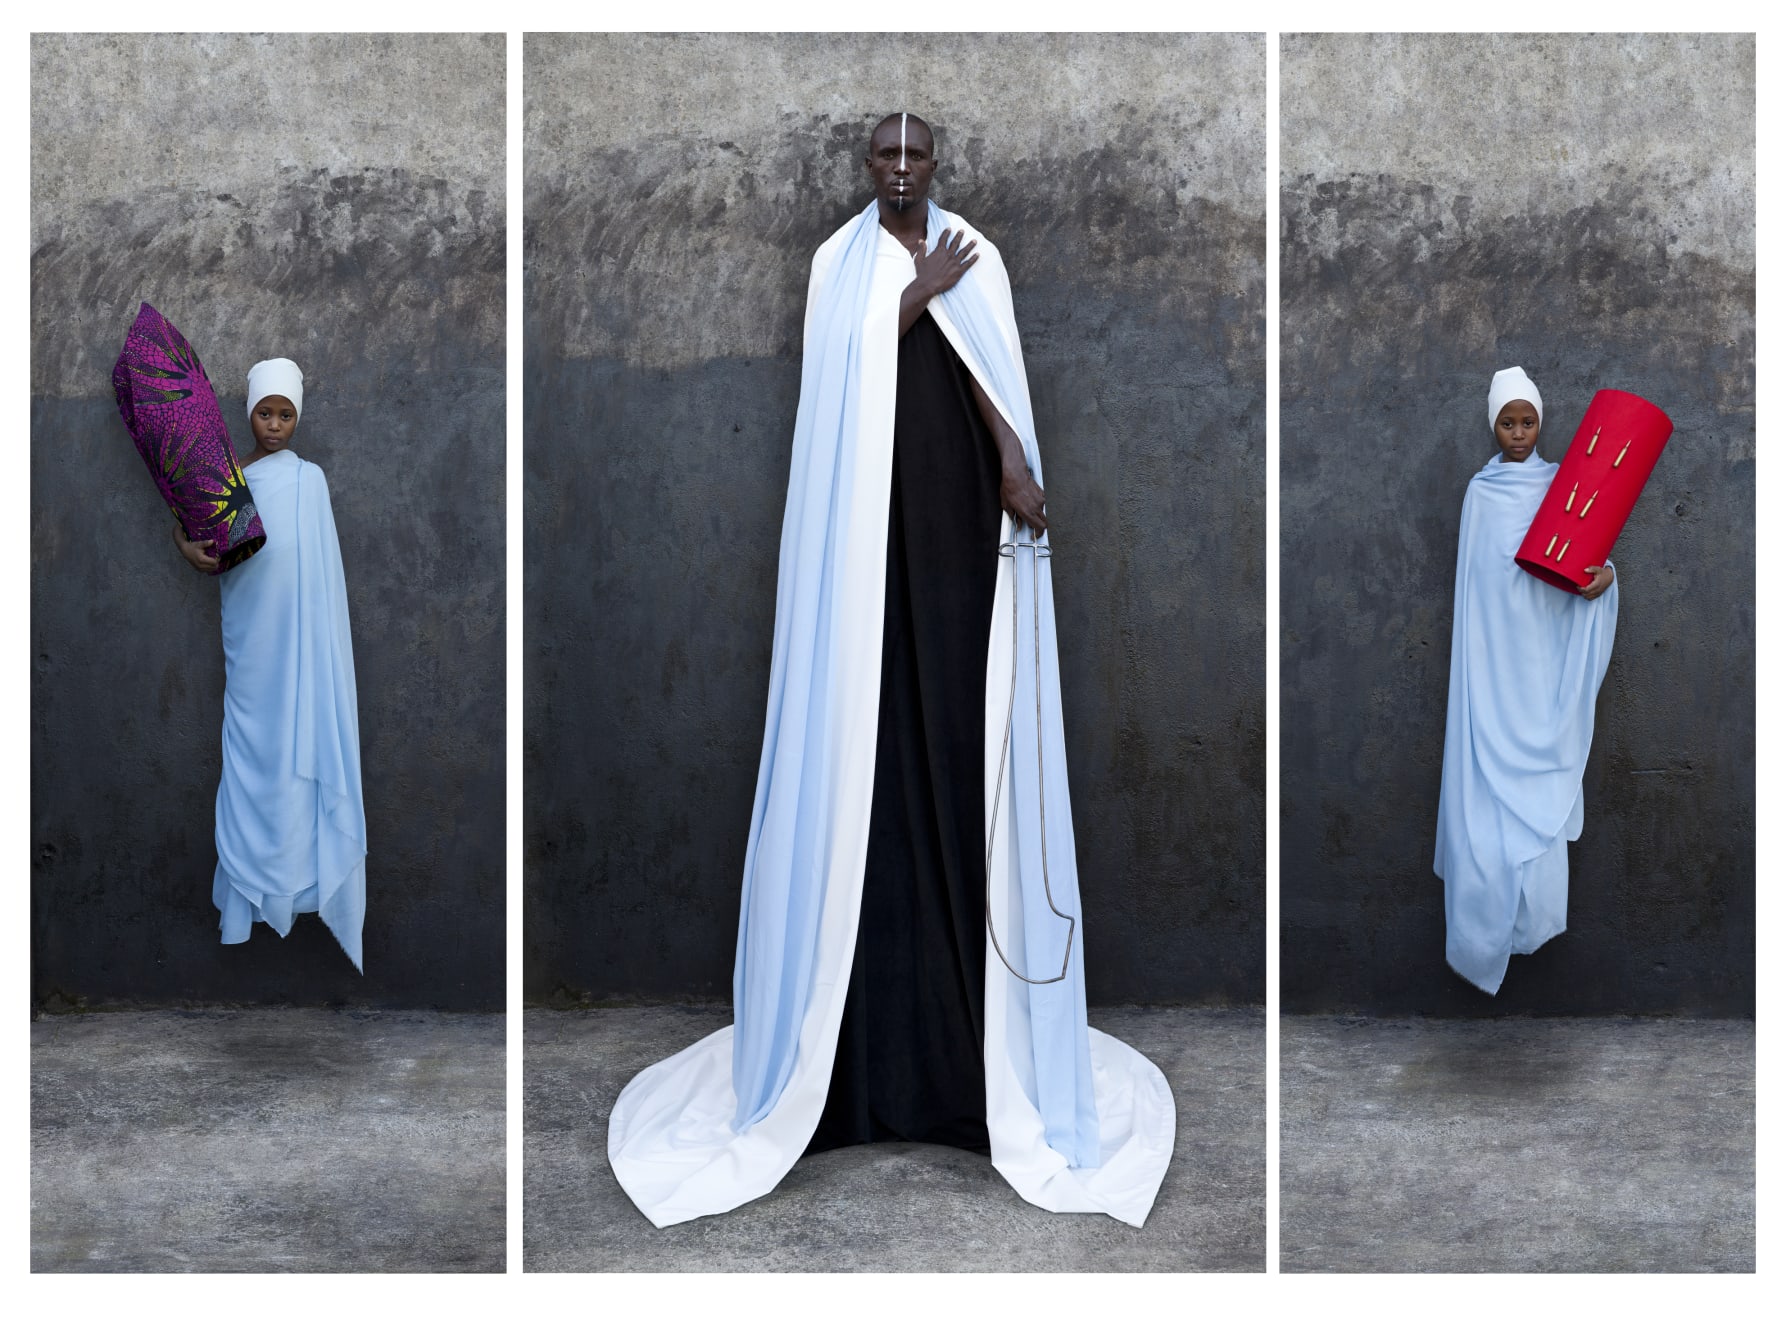 Maïmouna Guerresi, Light blue triptych, 2010